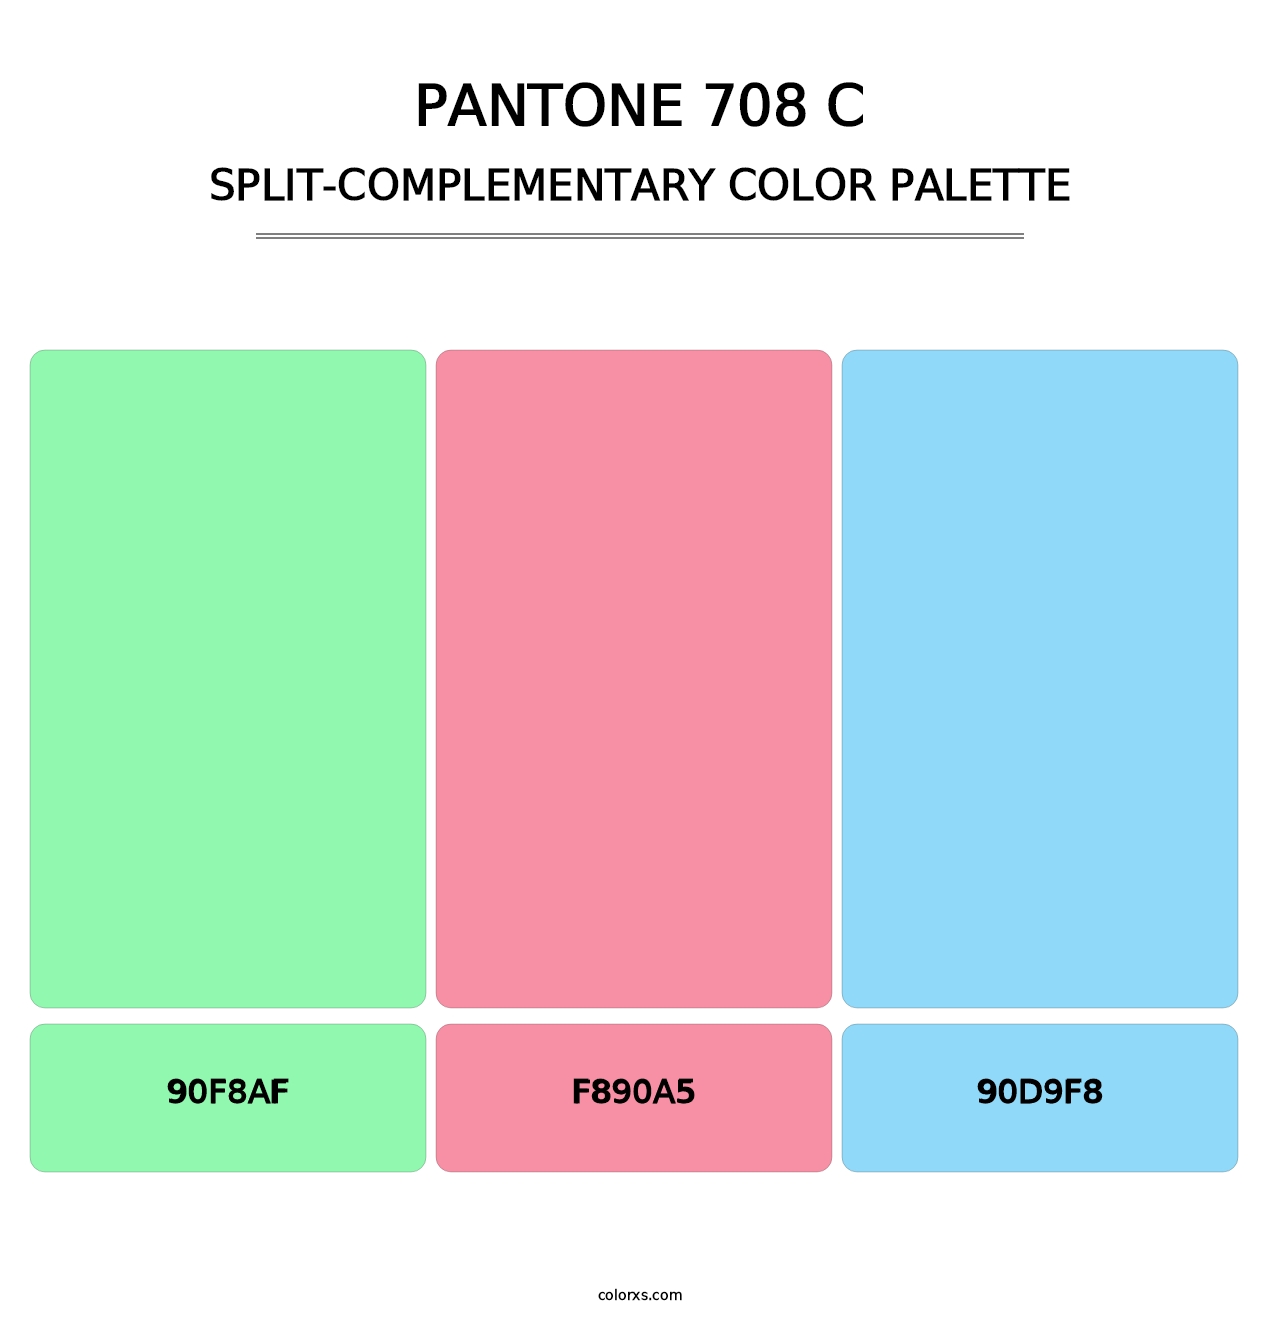 PANTONE 708 C - Split-Complementary Color Palette